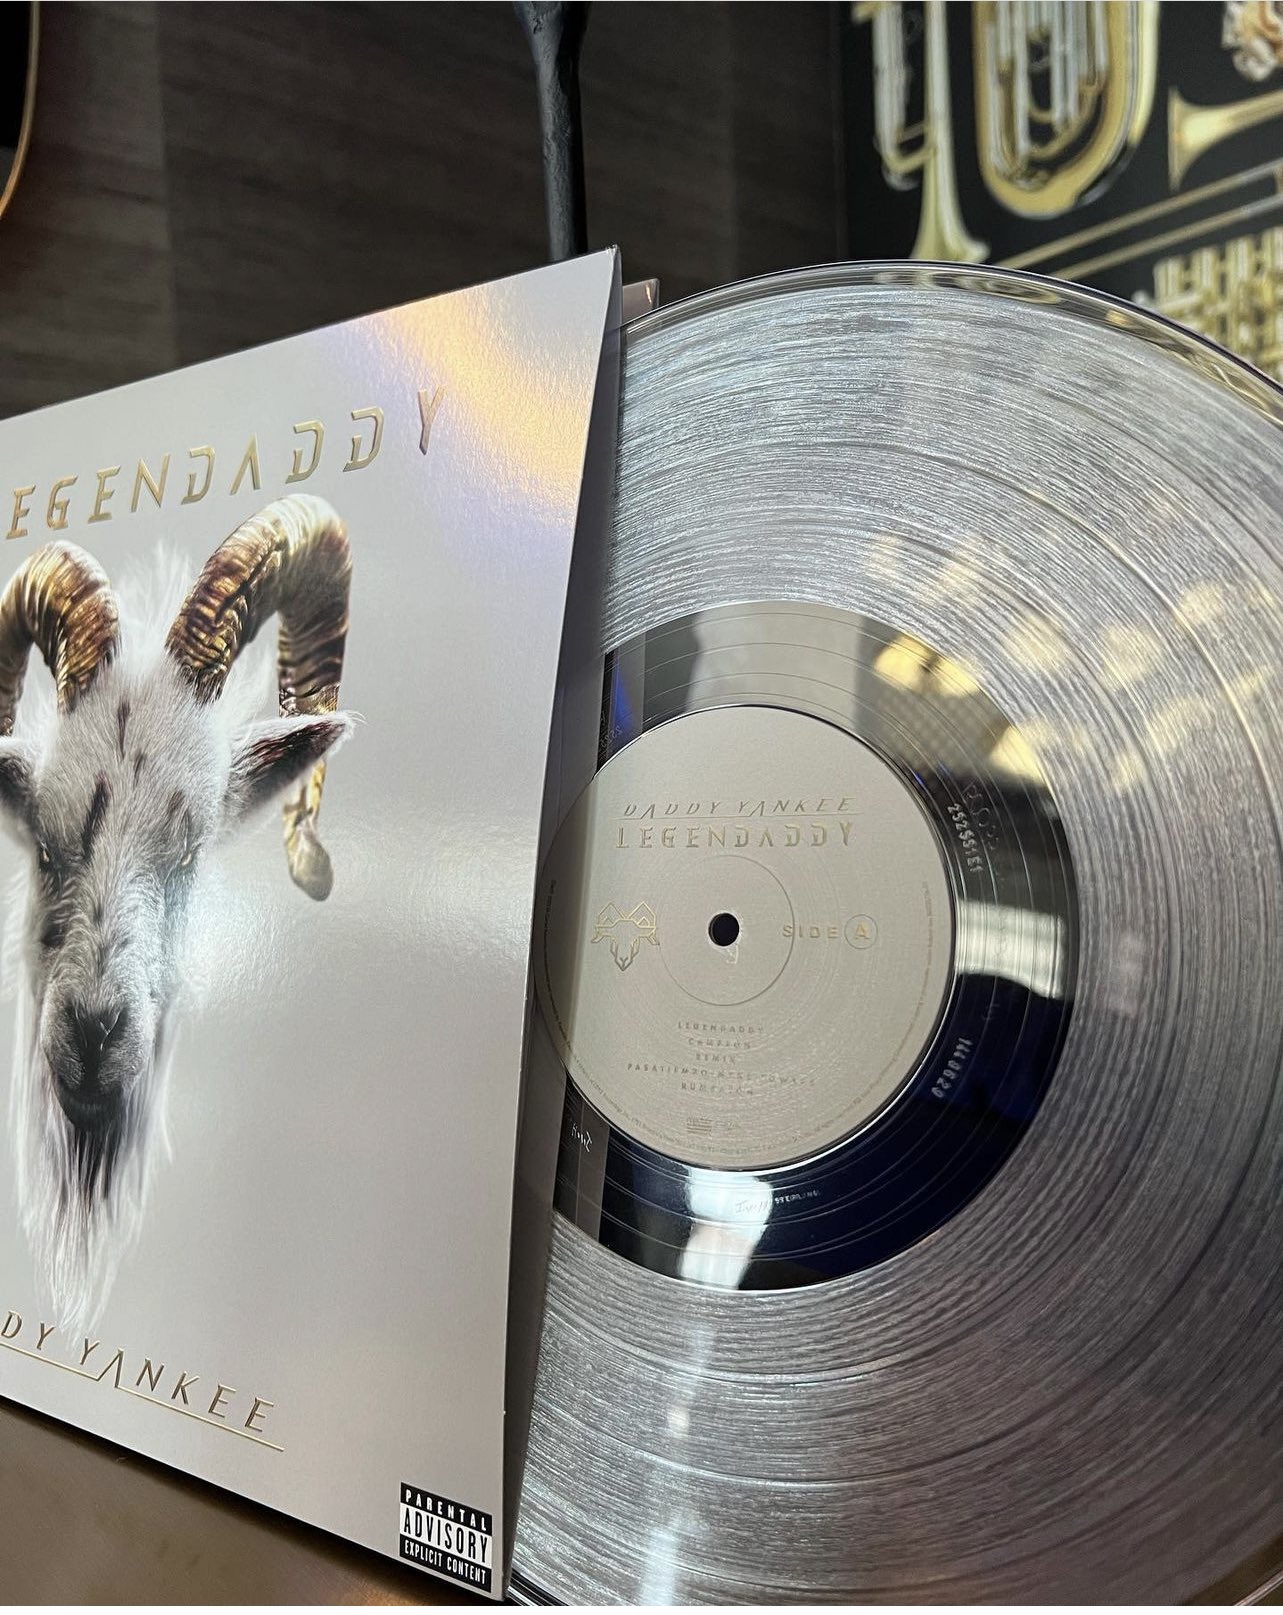 Disco de vinilo del álbum 'Legendaddy' del cantante Daddy Yankee.